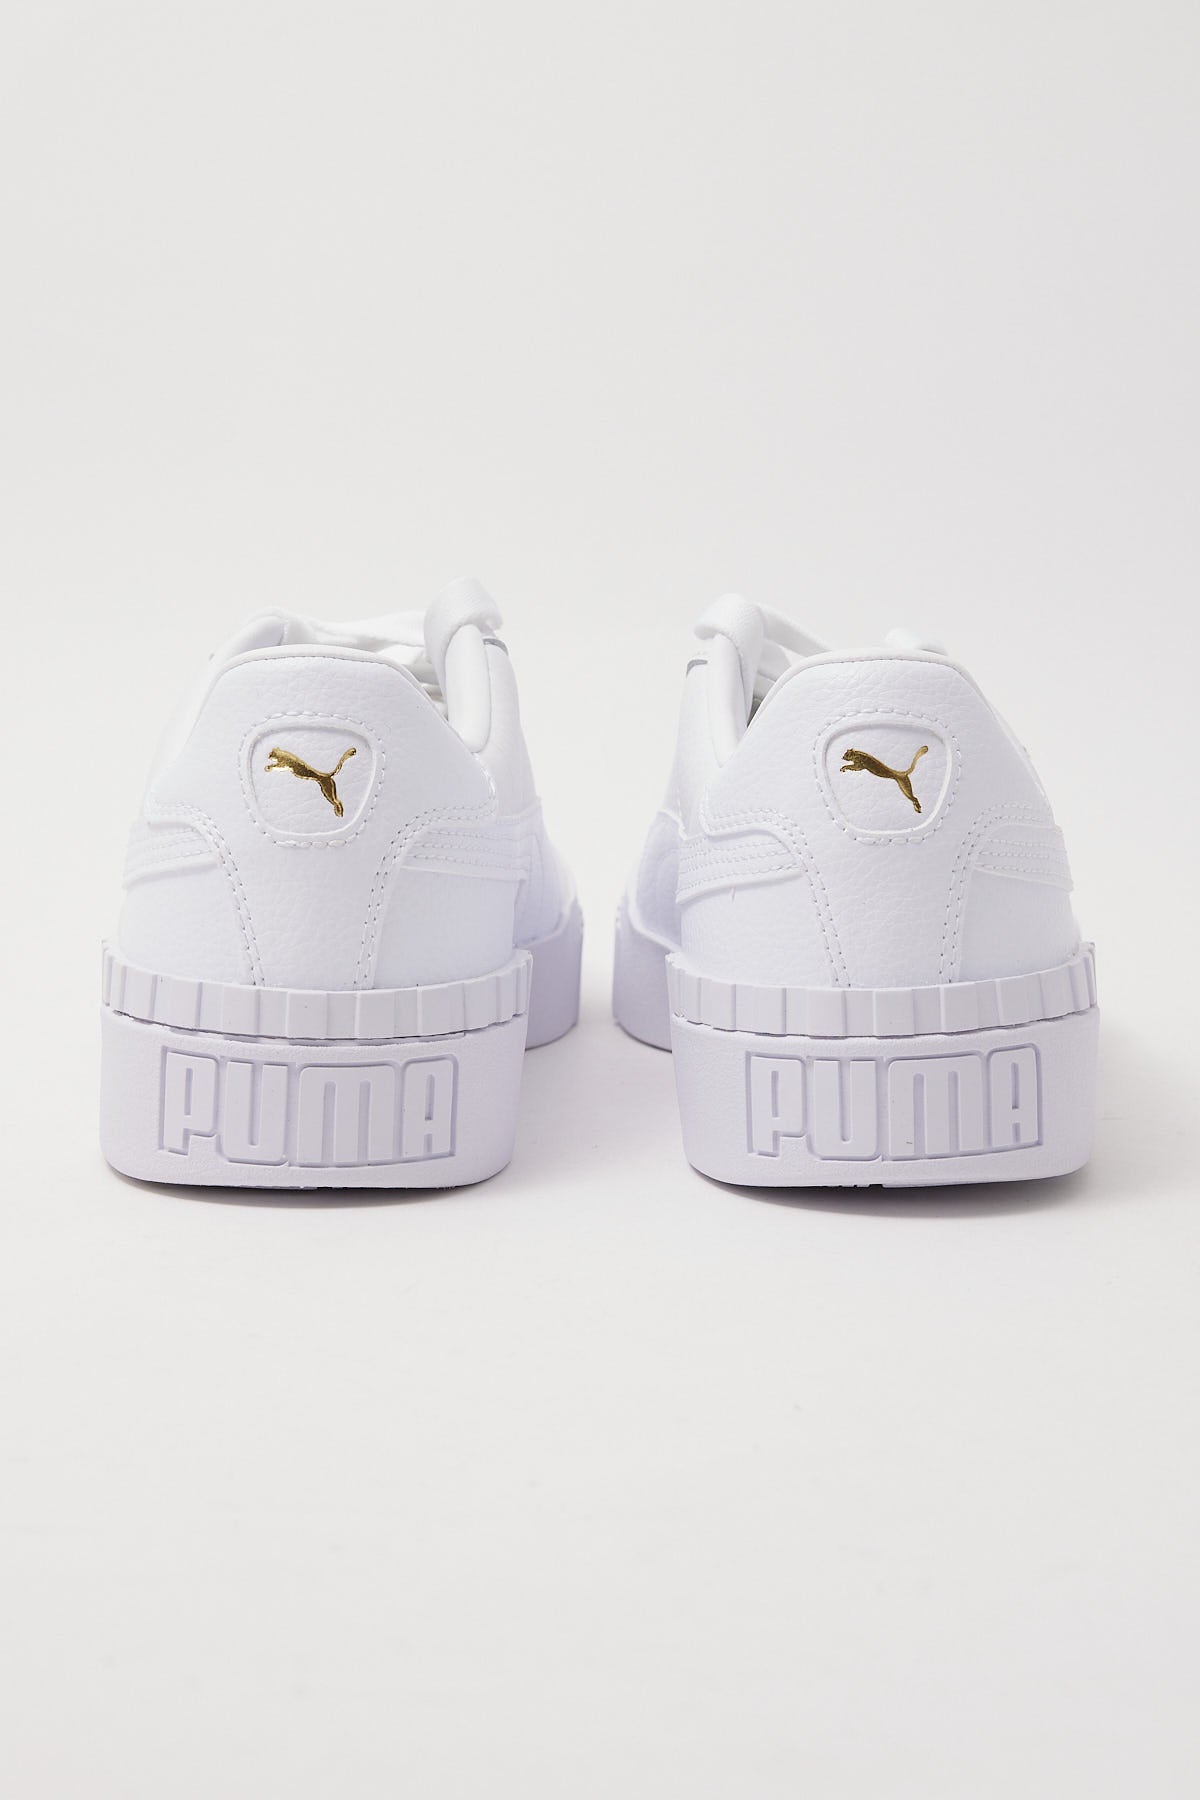 Puma Cali White/White